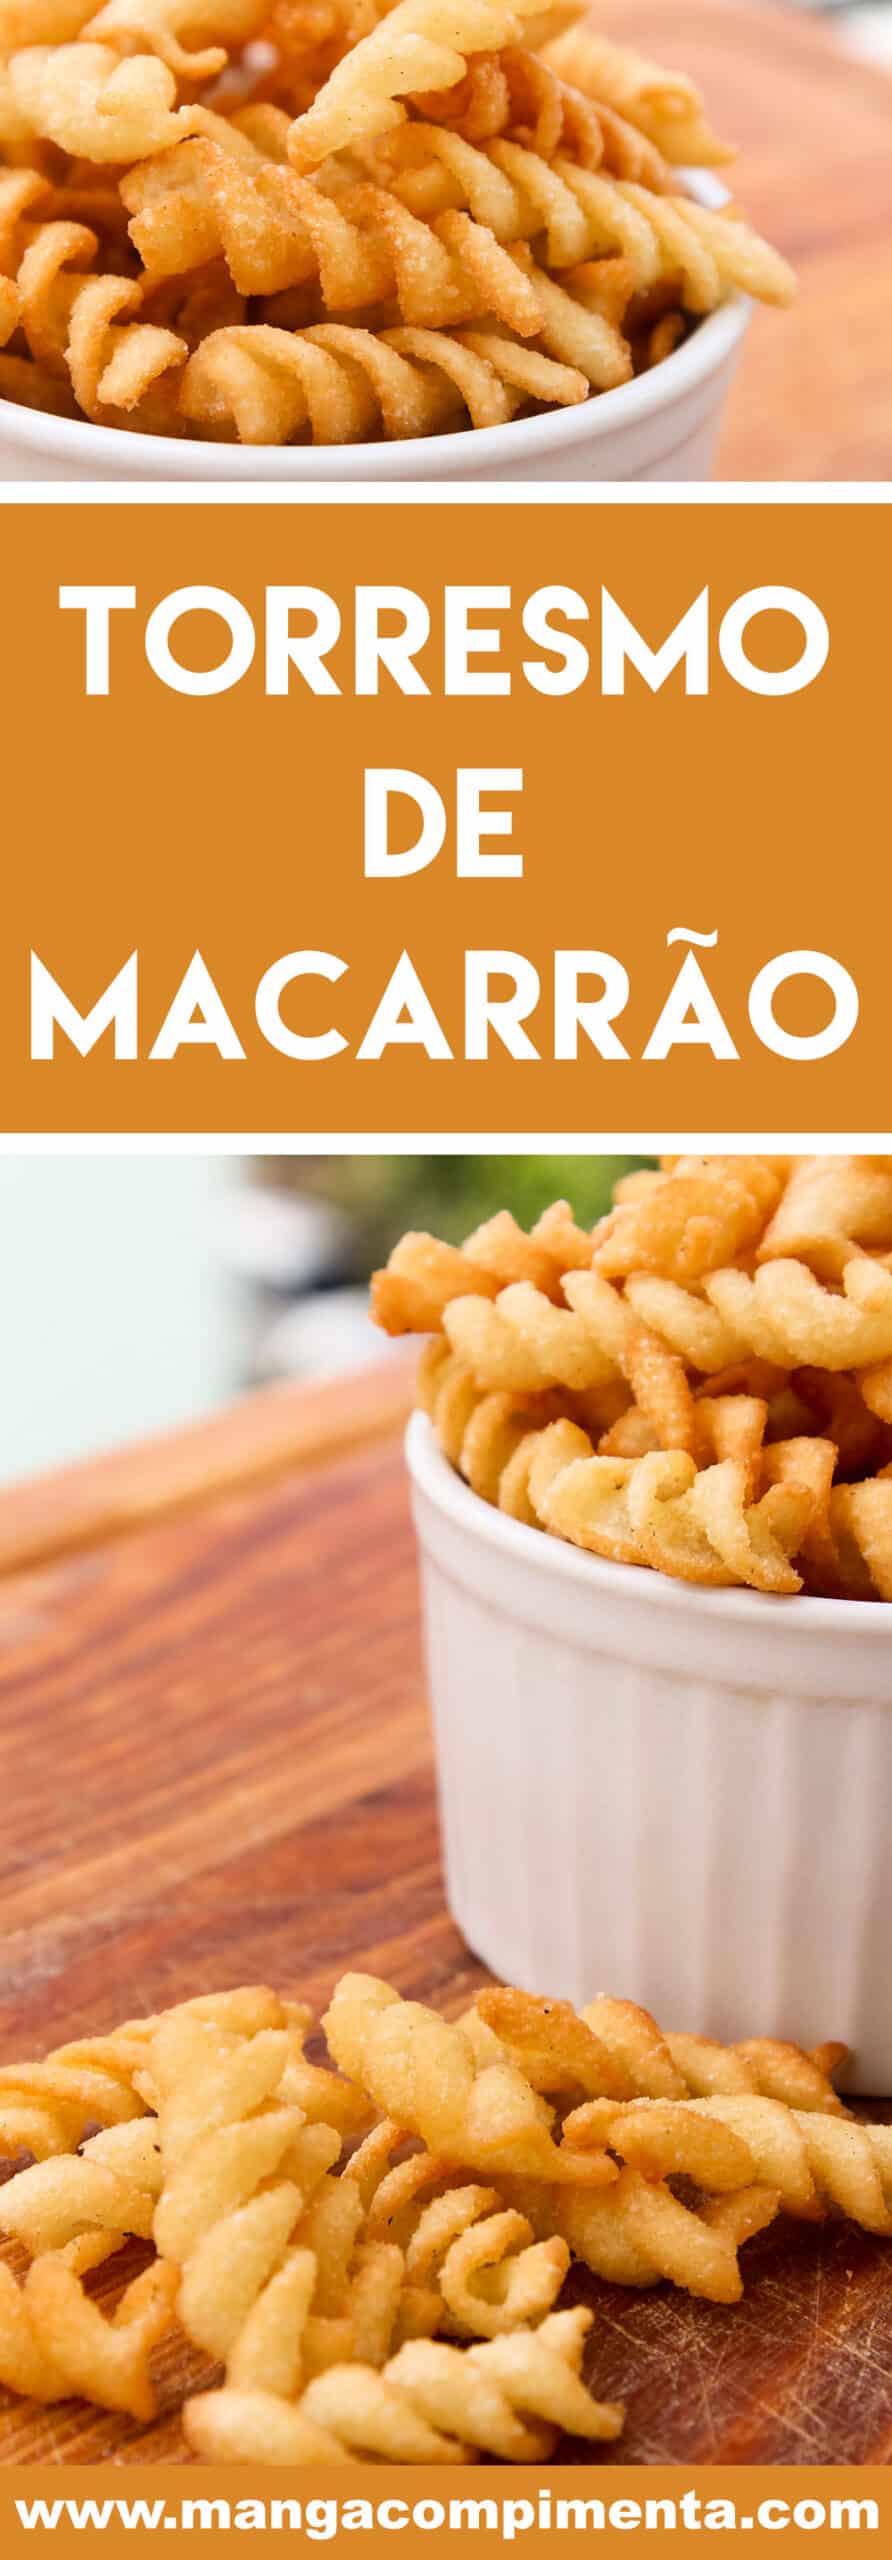 Receita de Torresmo de Macarrão - aproveite para preparar um petisco delicioso no carnaval. 